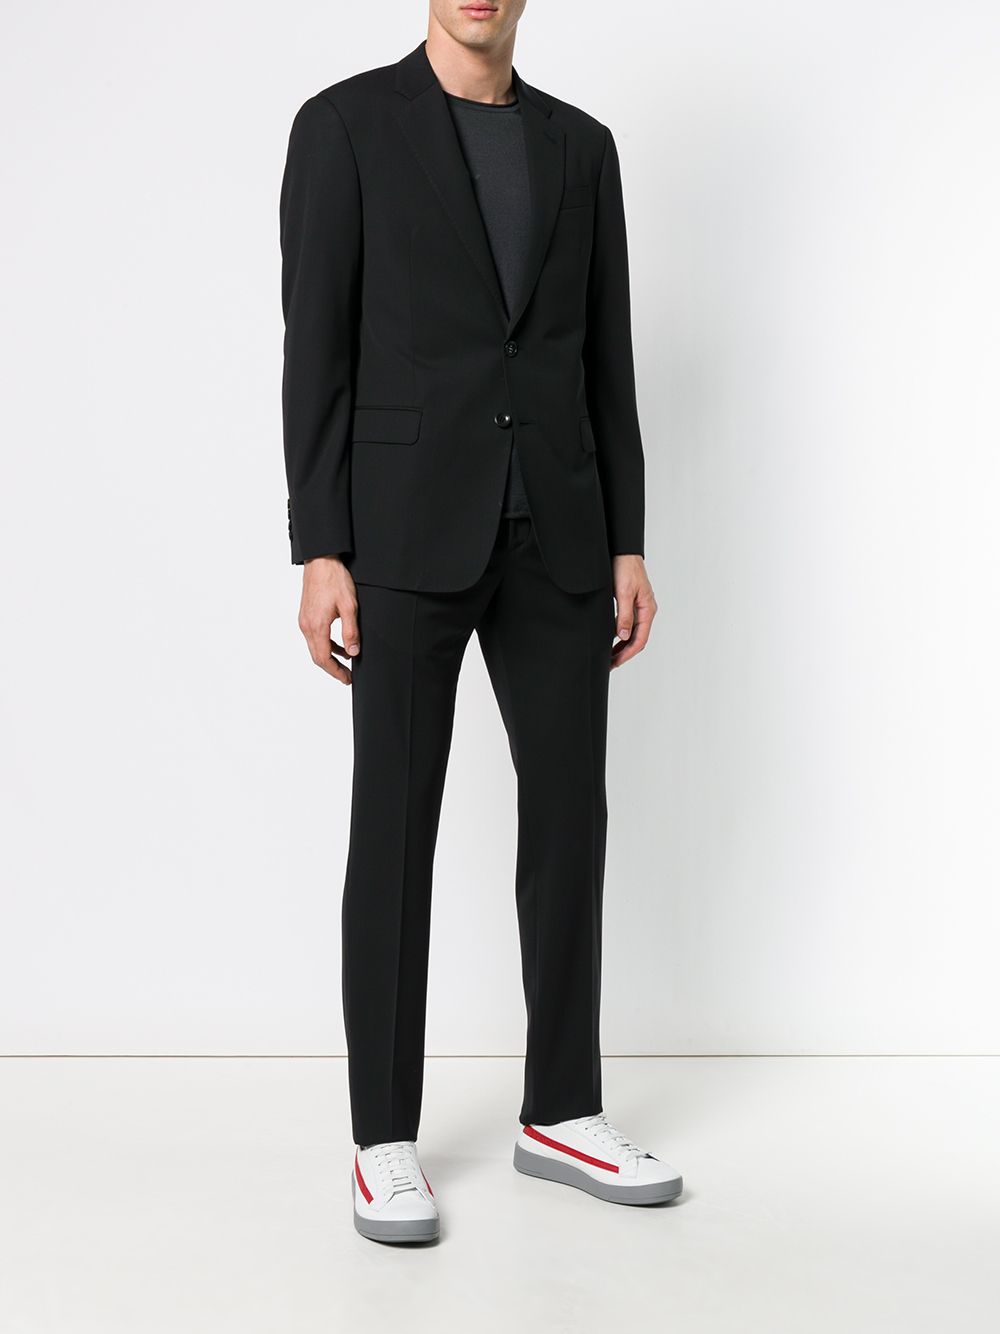 Giorgio Armani GIORGIO ARMANI- Men's Suit With Logo